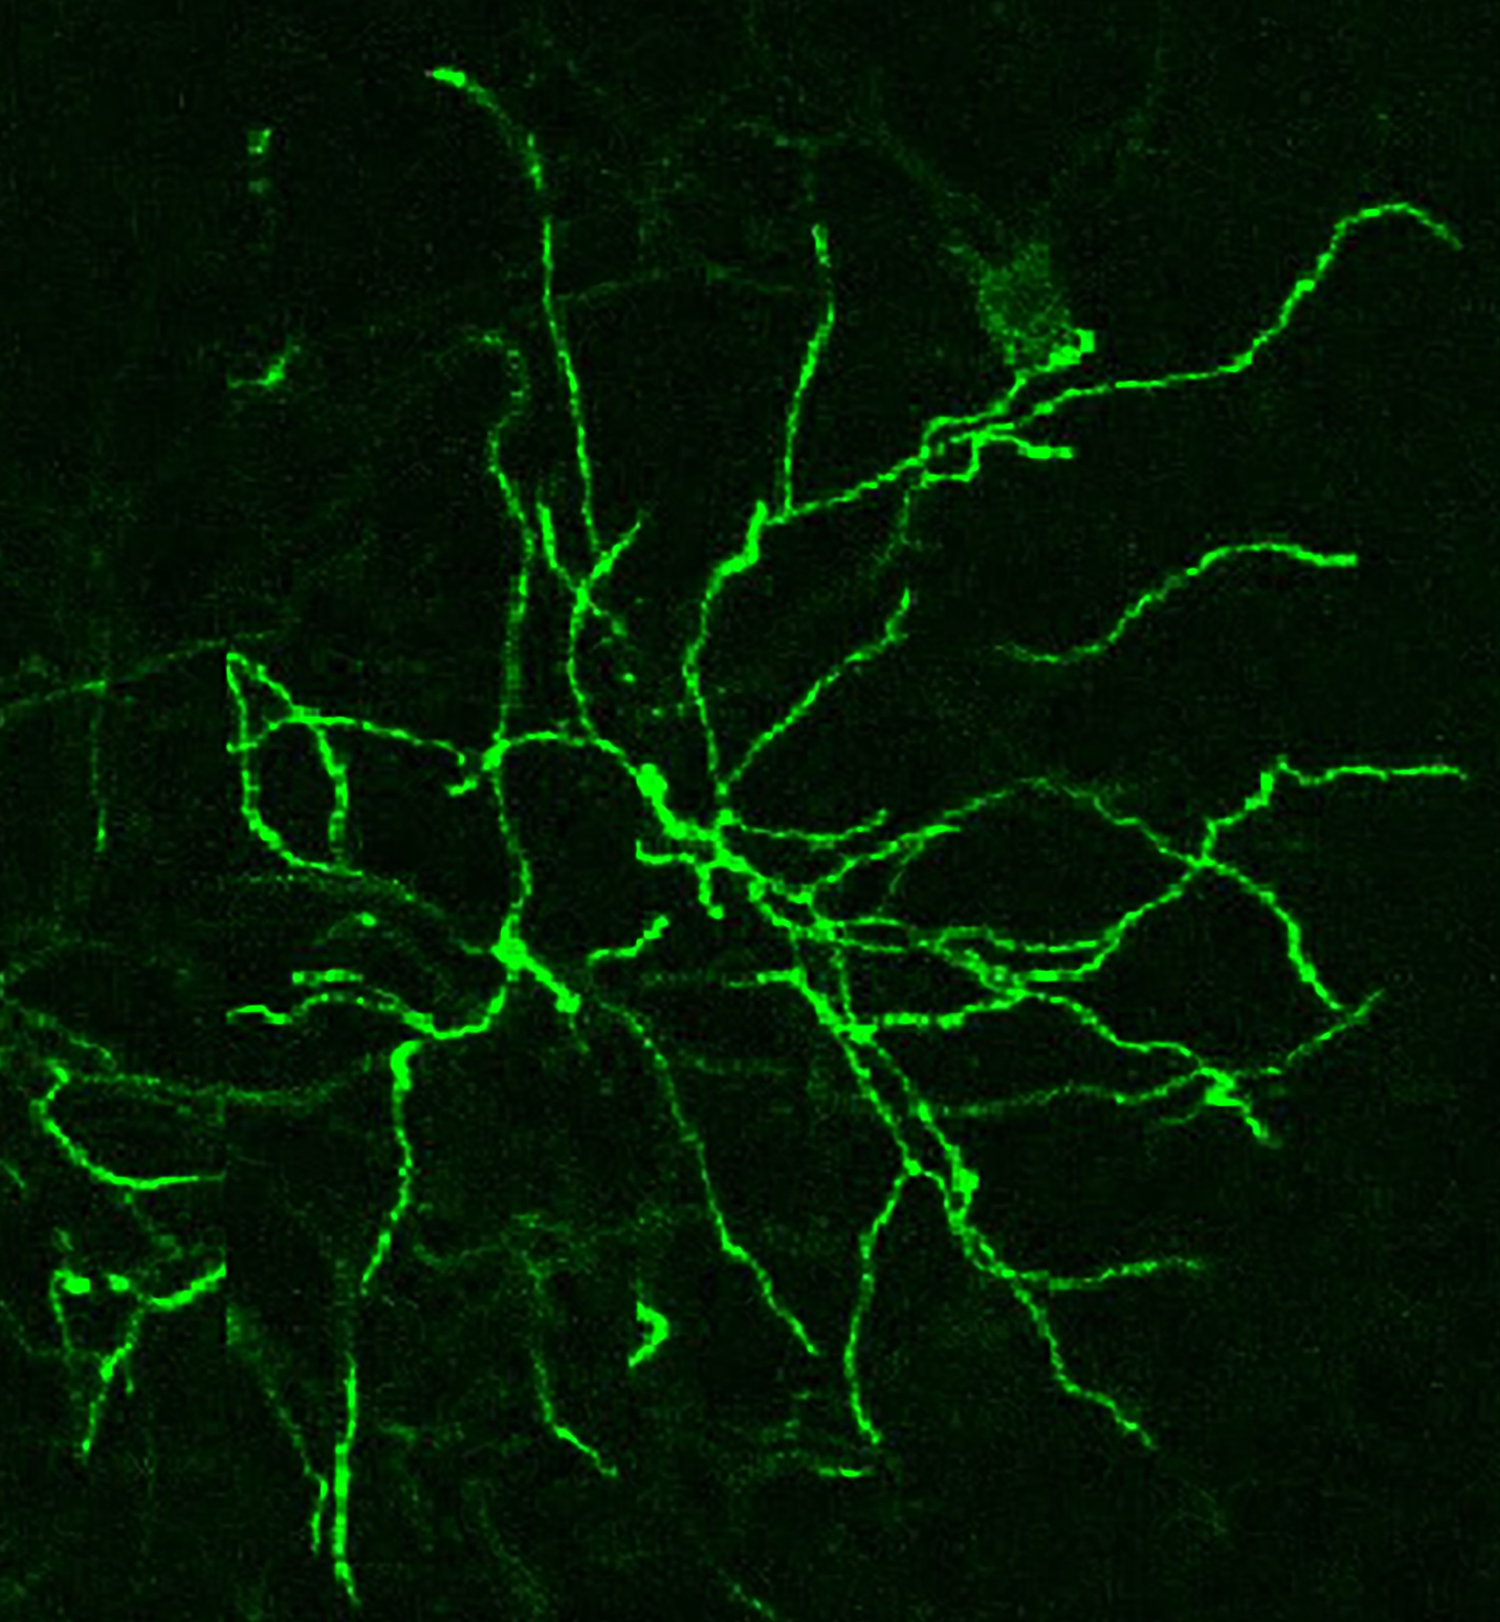 Communications between neurons 